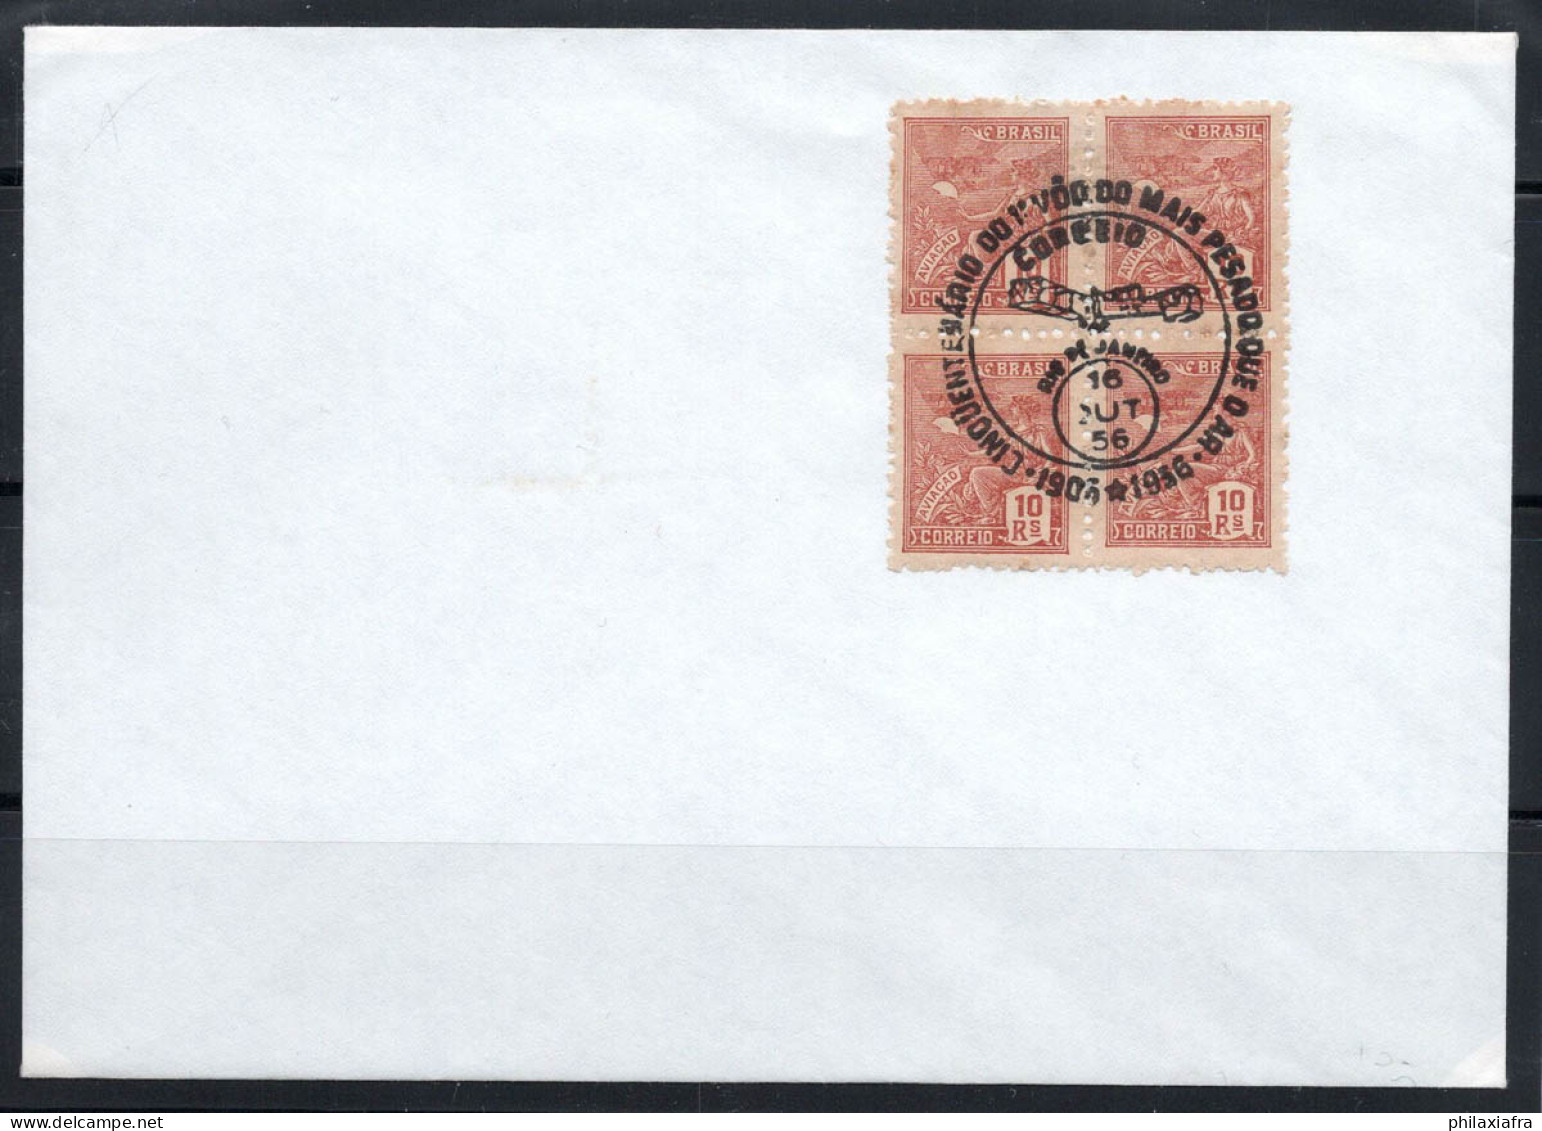 Brésil 1956 Enveloppe 100% Poste Aérienne Rio De Janiero - Lettres & Documents